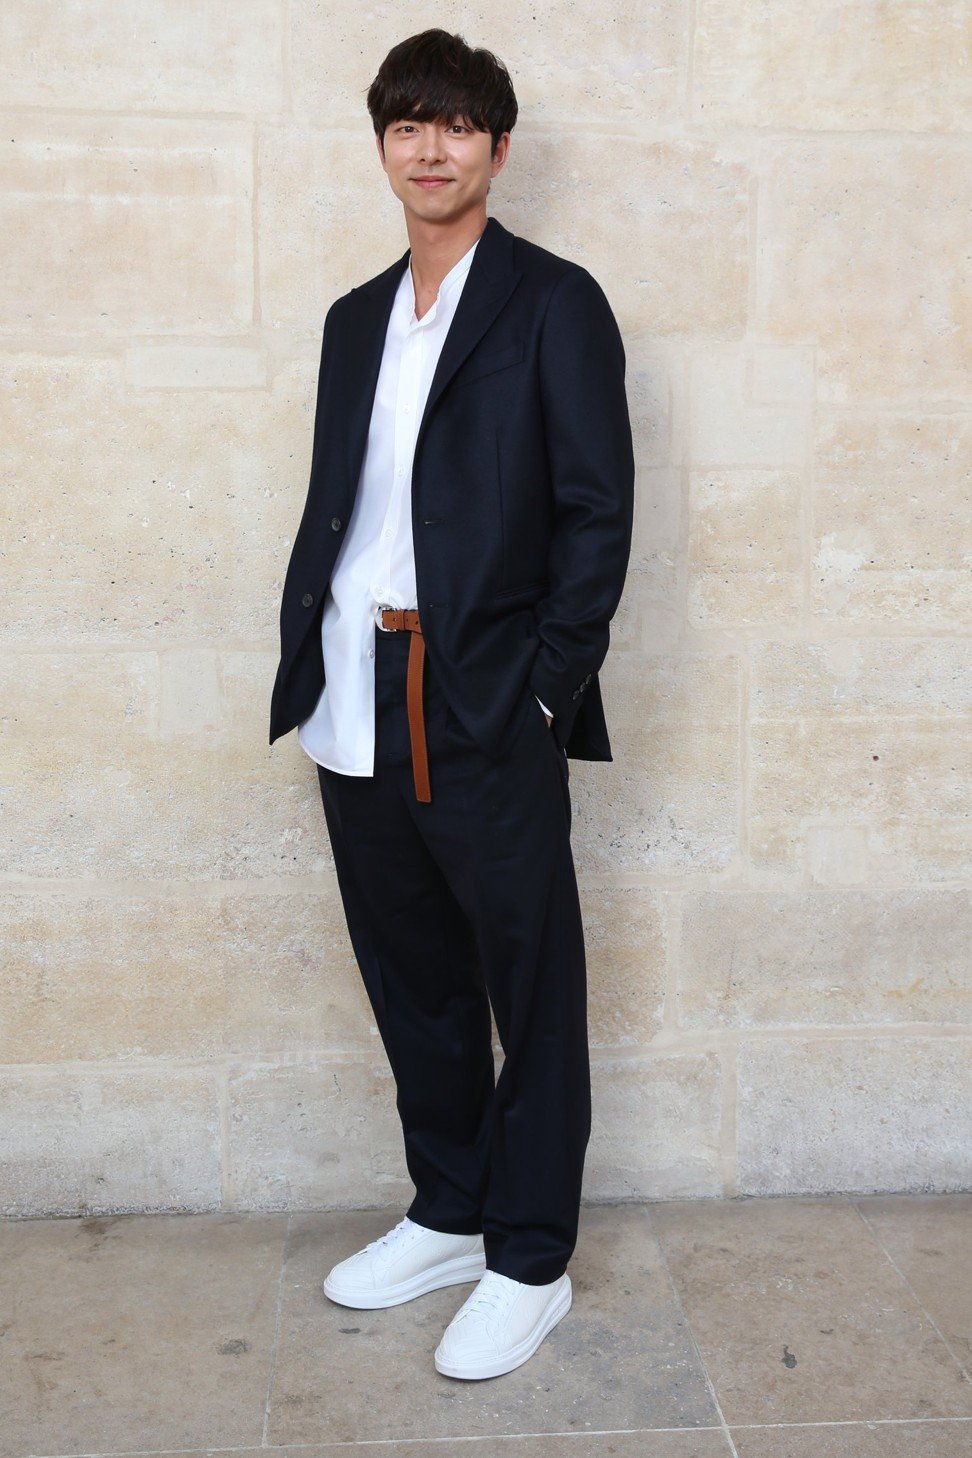 Goblin 도깨비 Thailand fans - 170622 Gong Yoo at Louis Vuitton Men's Fashion  Show SS18 #LVmenss18 / Paris cr. adwin_ma_mr_magazine